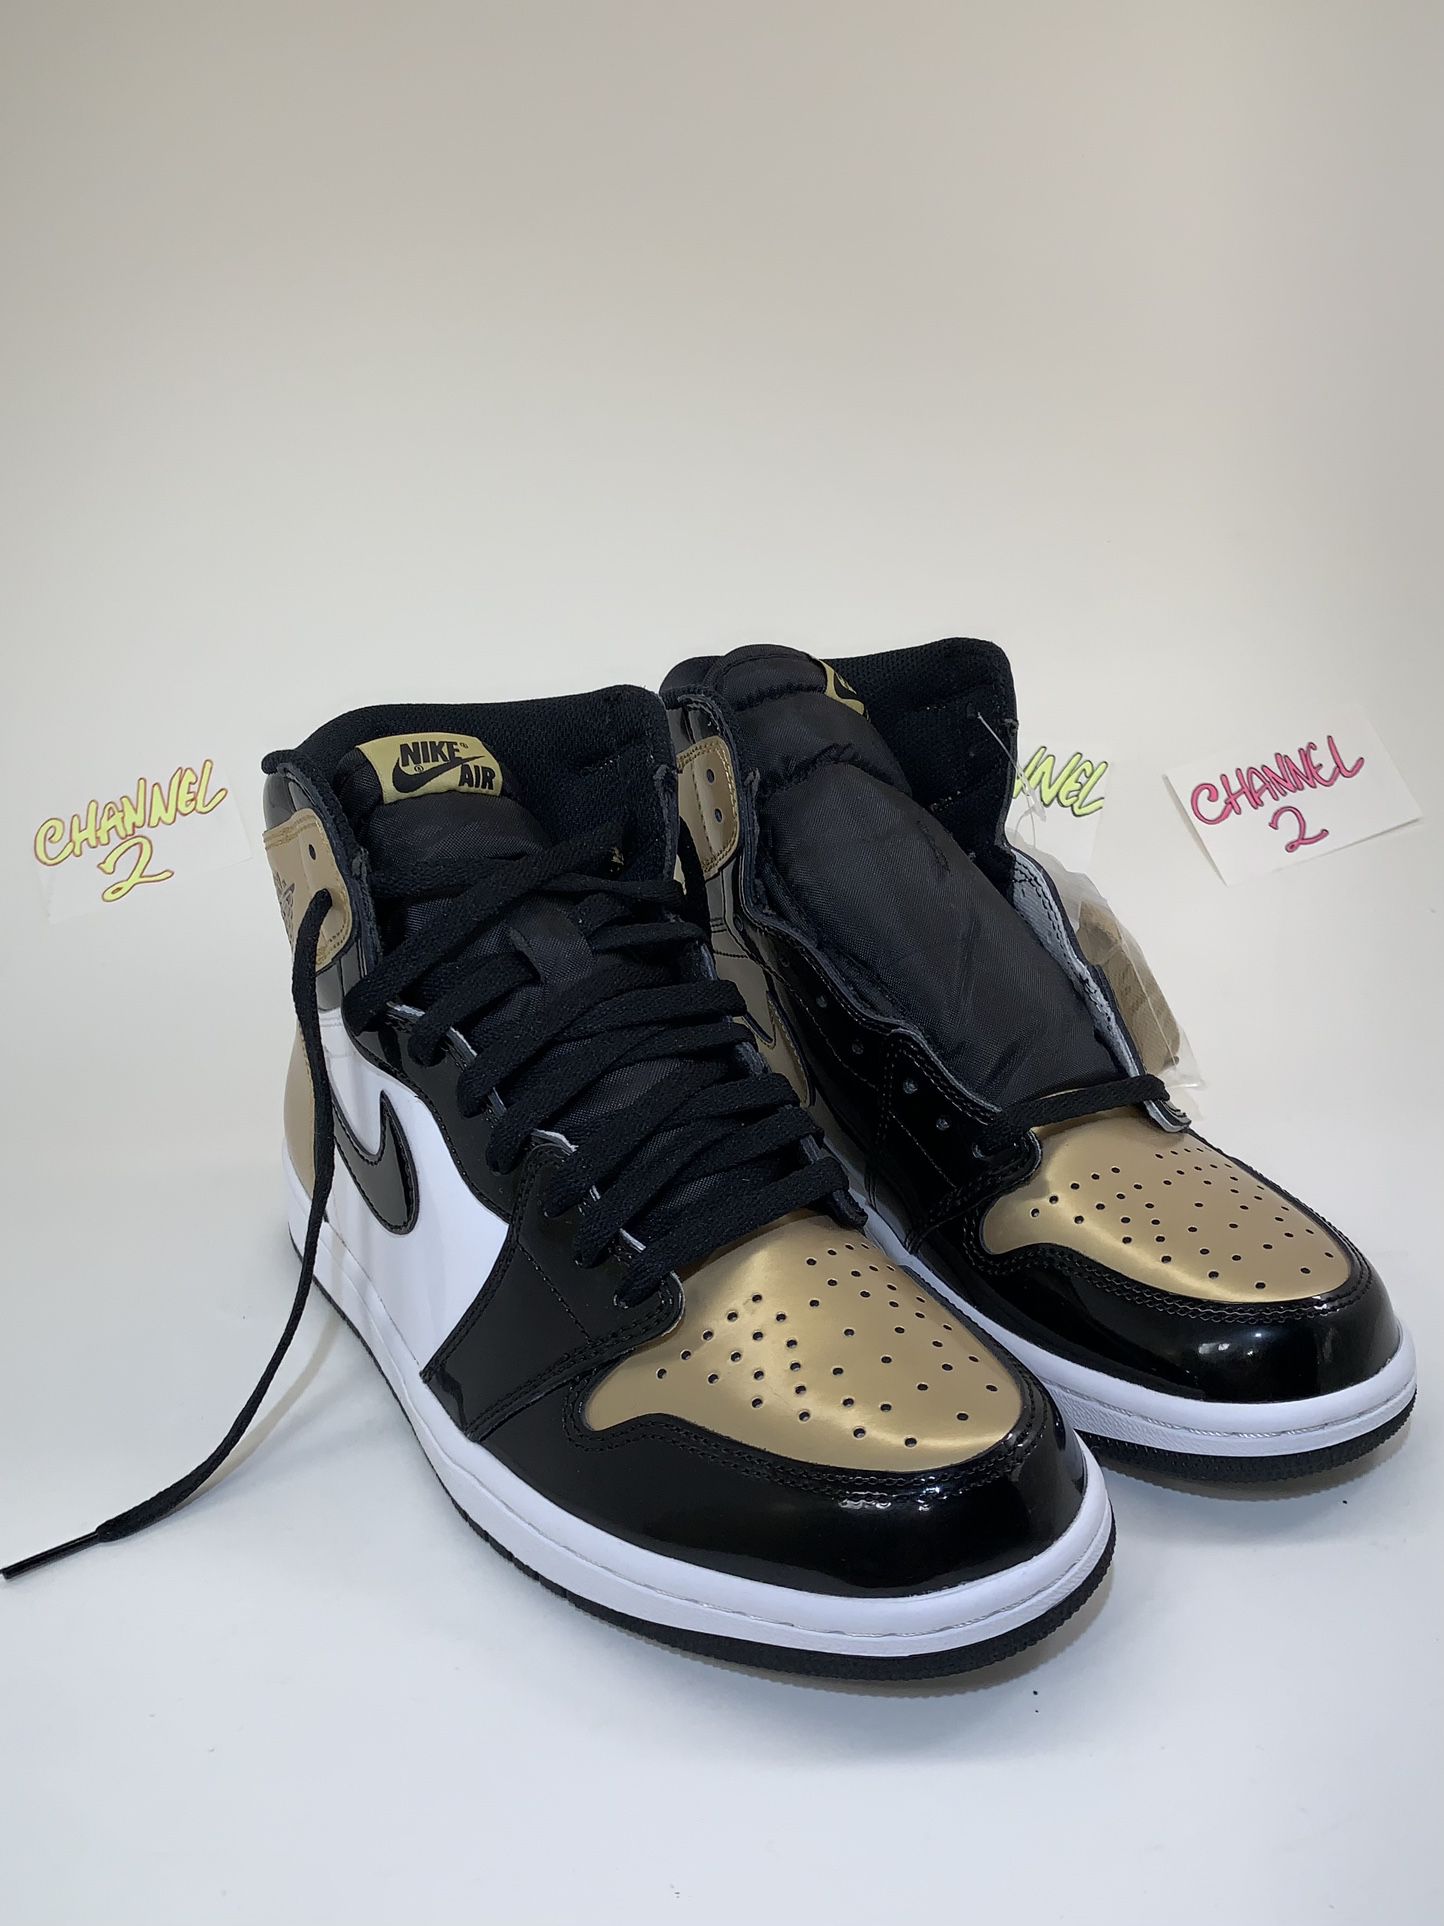 Jordan 1 NRG Gold Toe Size 10